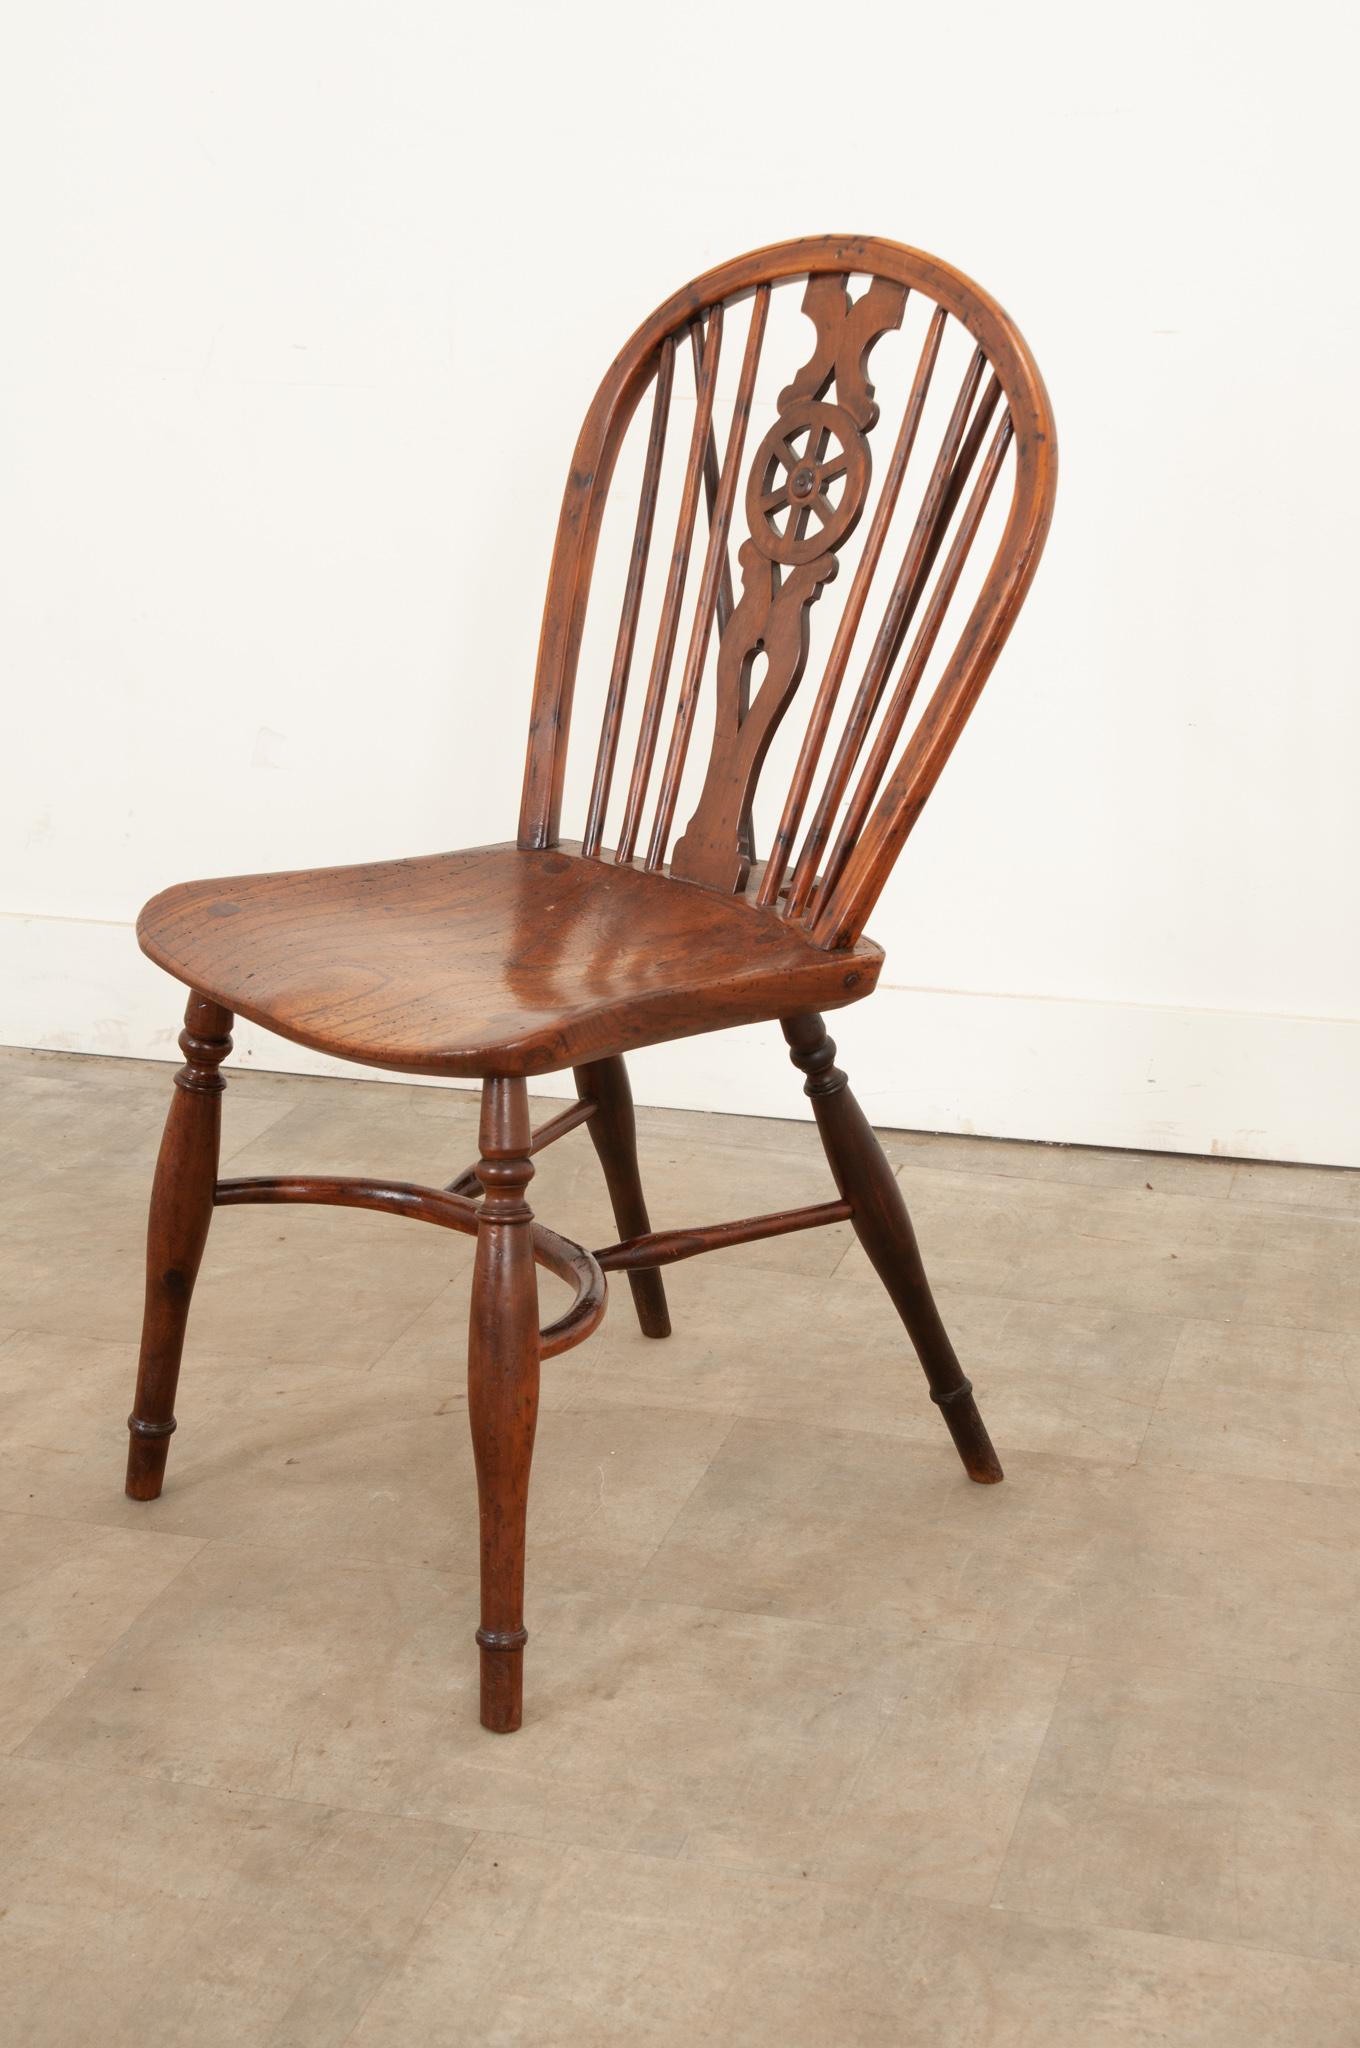  Une belle chaise à dossier roulant en chêne du début du 19e siècle. Fabriquée à la main vers 1810, cette séduisante chaise présente un dossier à arceaux avec un magnifique dos de roue percé, une assise bien figurée et d'élégants pieds tournés